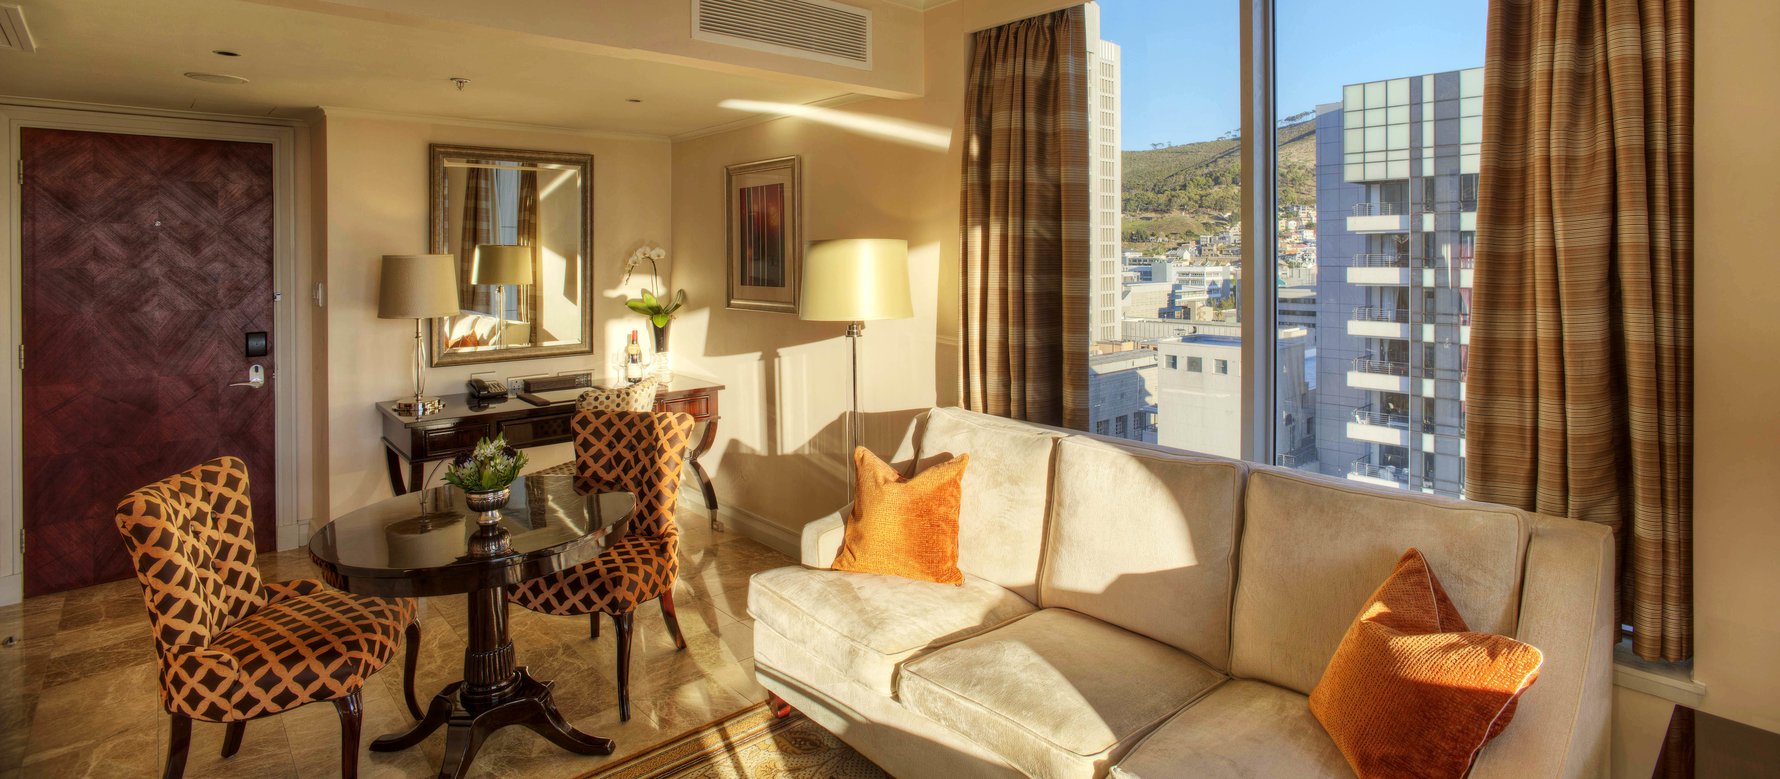 Views across Cape Town - Taj Hotel suite